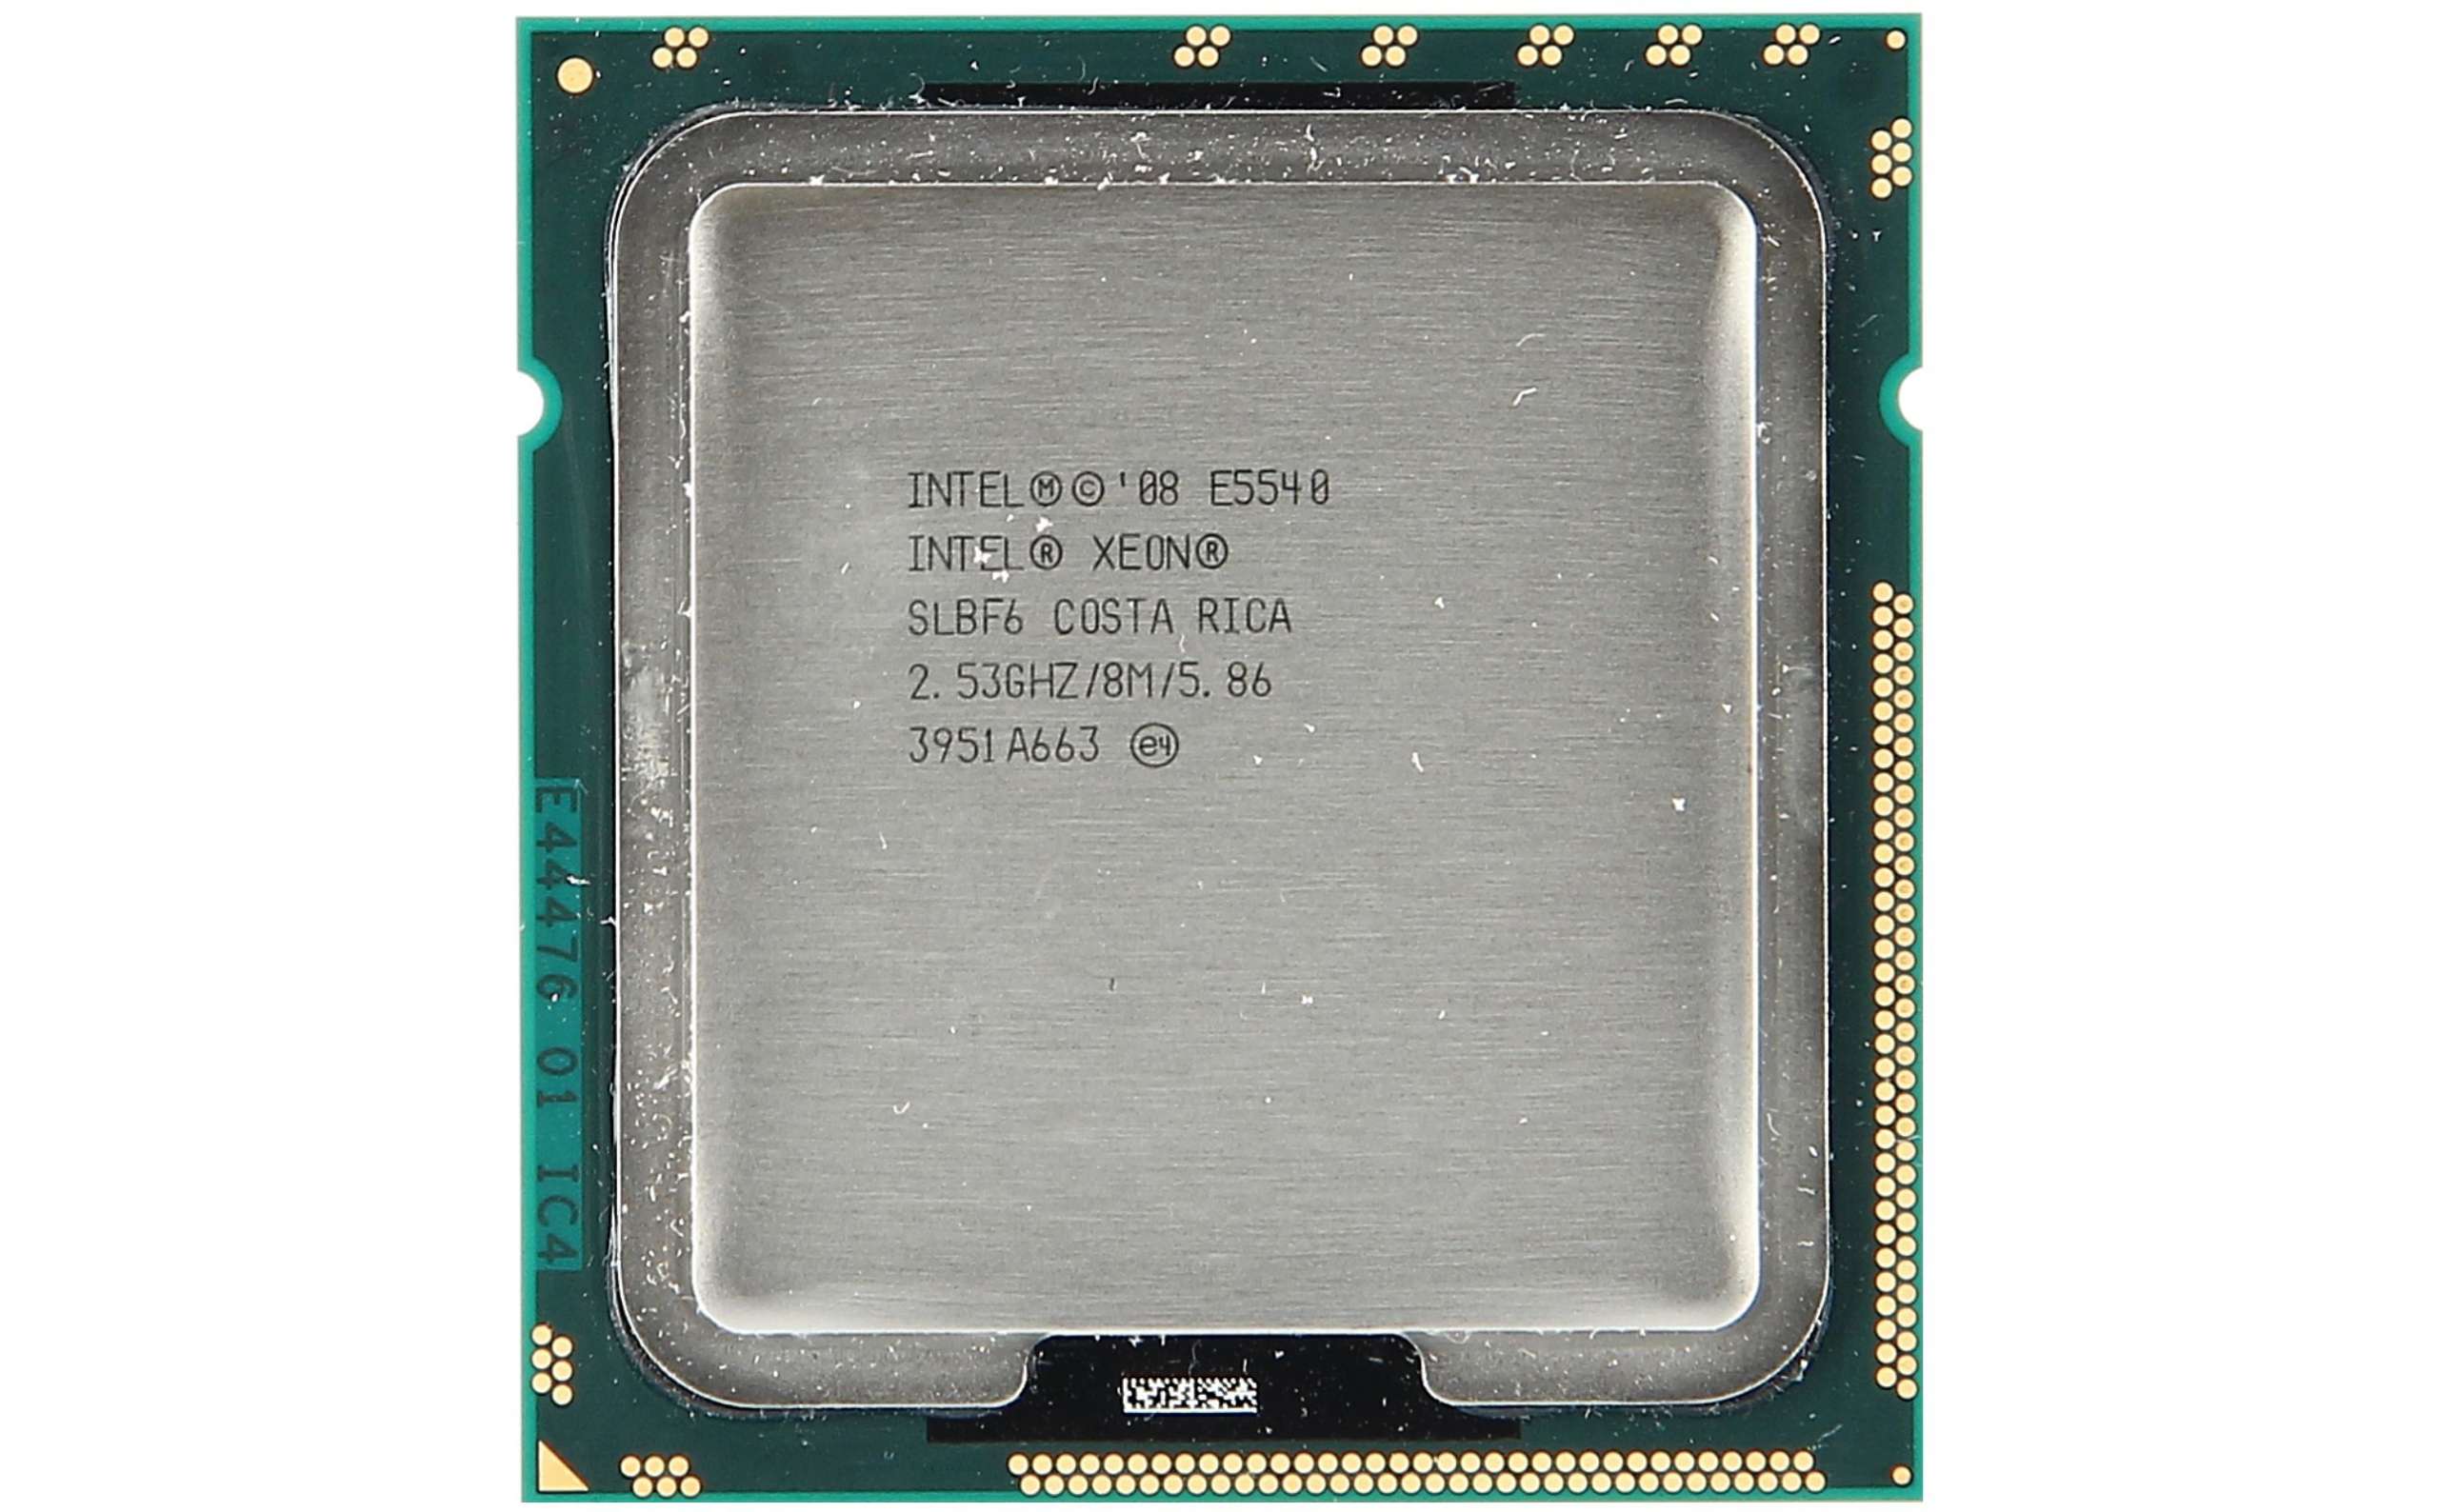 LOT OF 2 Intel Xeon E5540 4-Core CPU Processor 2.53GHz 8M 5.86GT/s LGA1366 SLBF6 